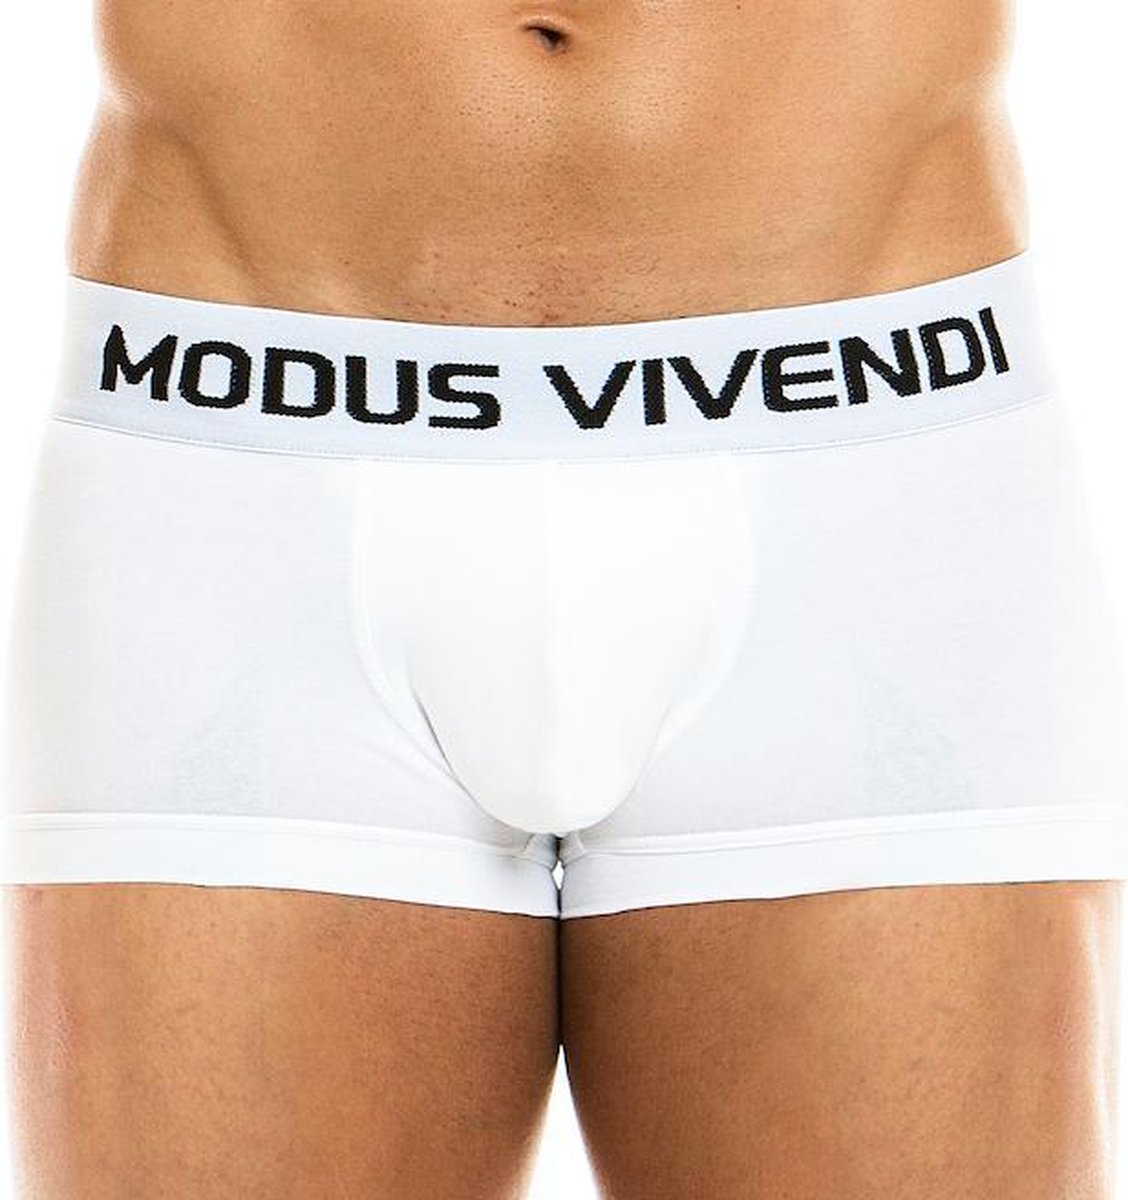 Modus Vivendi - Classic Boxer Wit - Maat S - Heren Boxer - Mannen Ondergoed